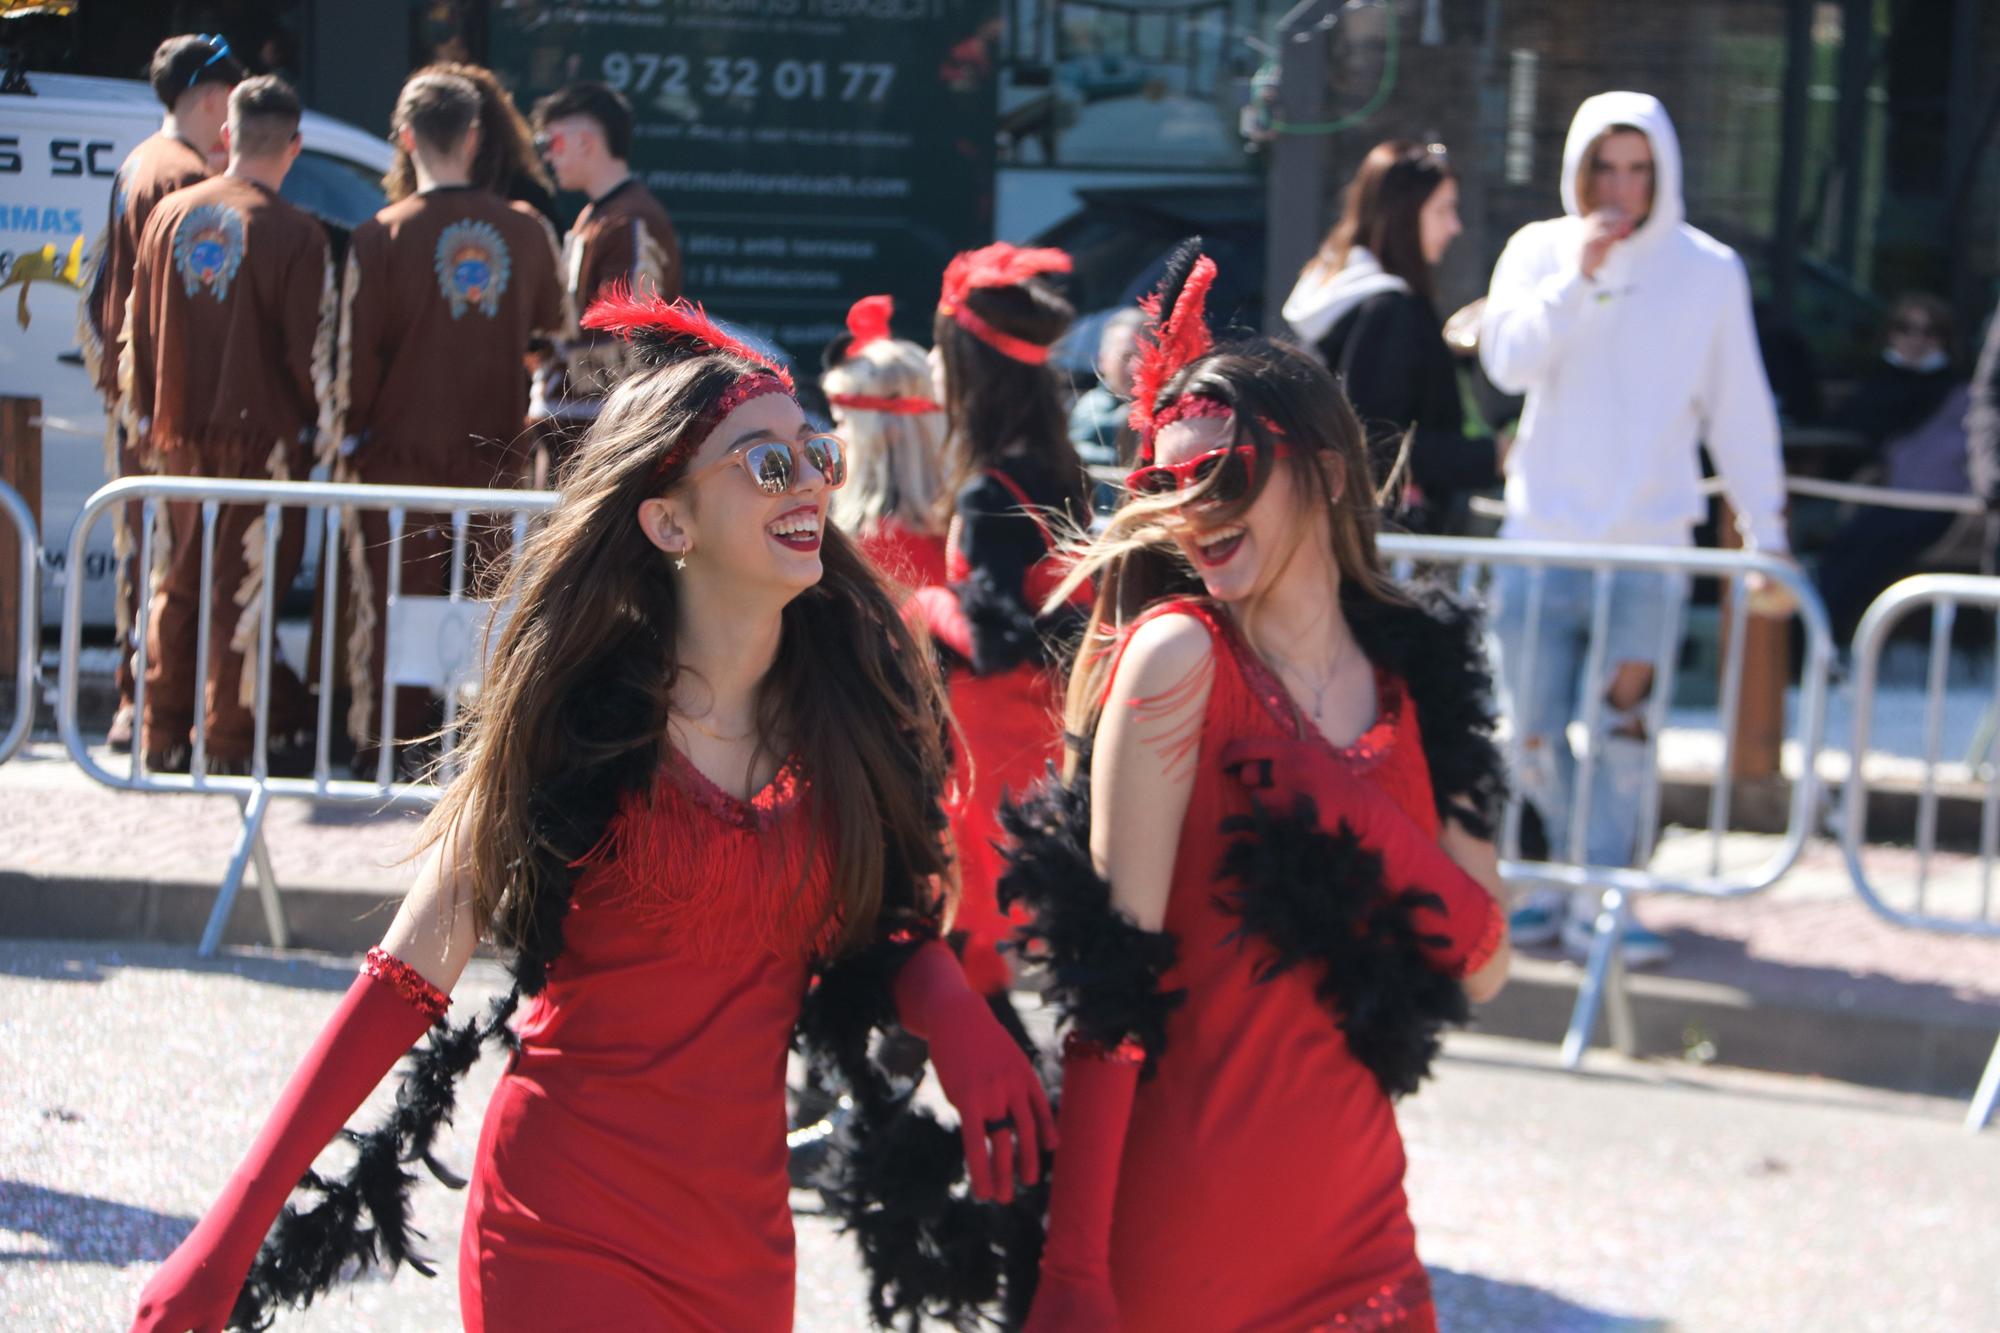 Les millors imatges del Carnaval de Platja d'Aro